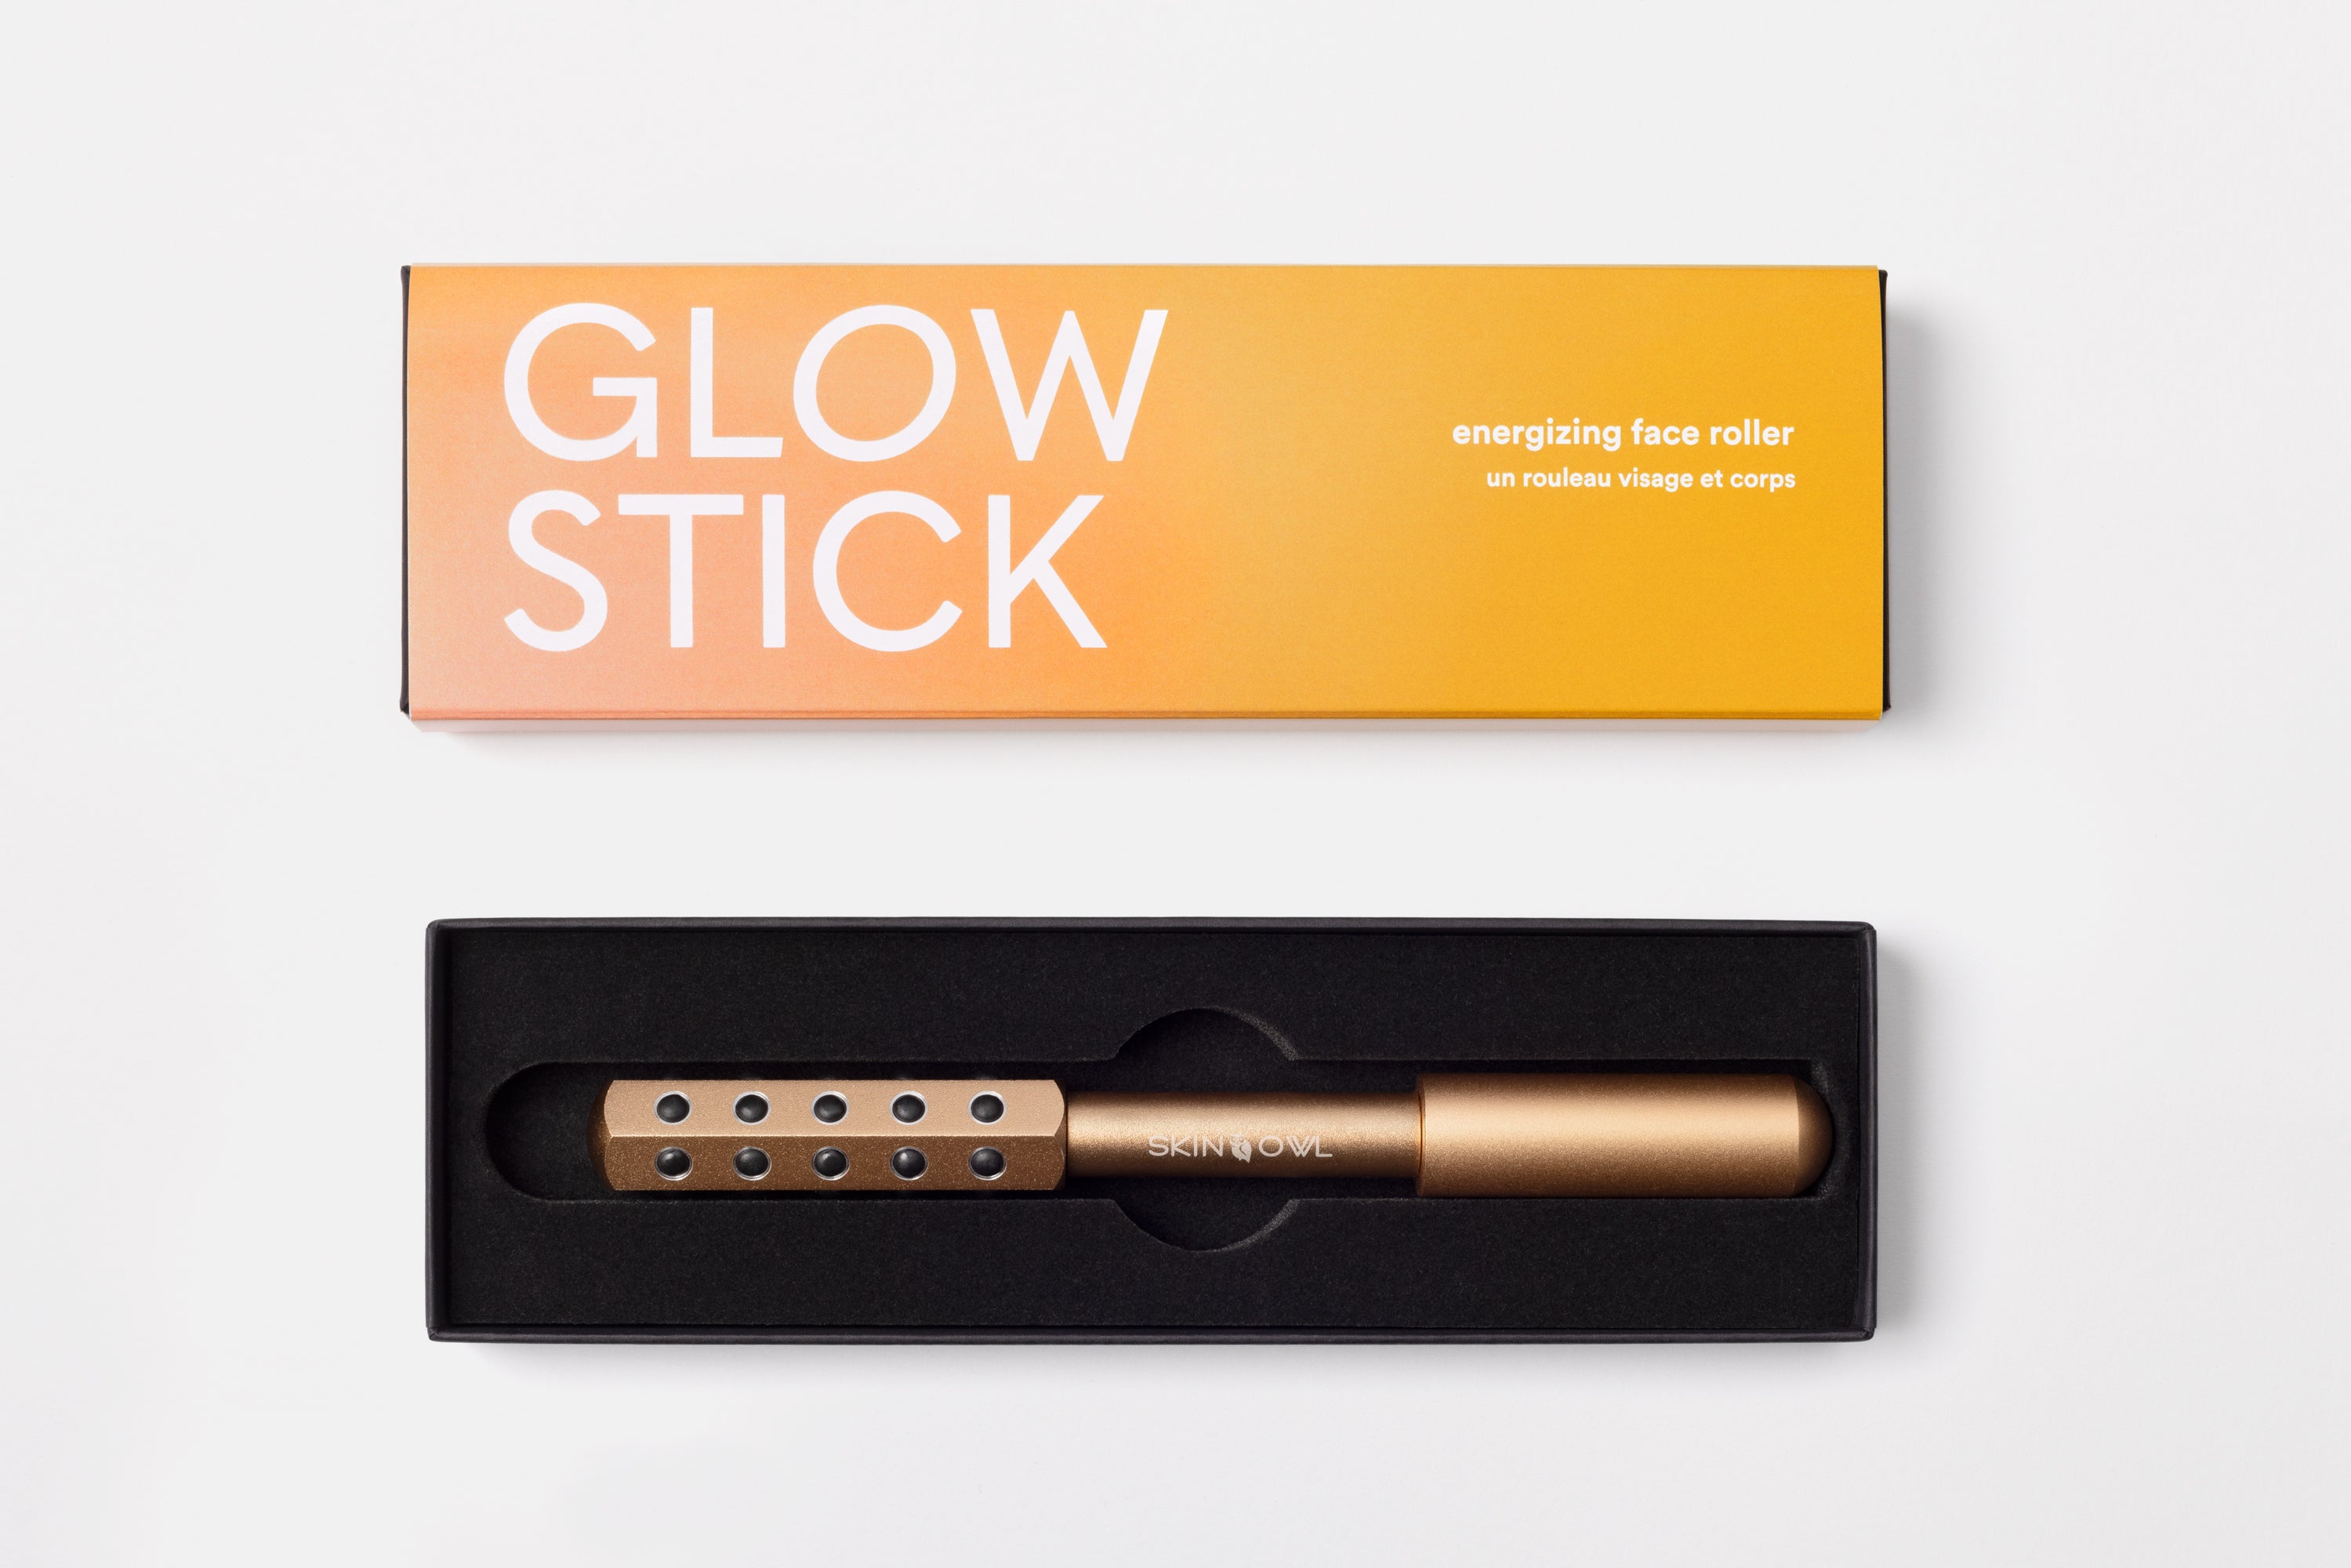 The Glow Stick